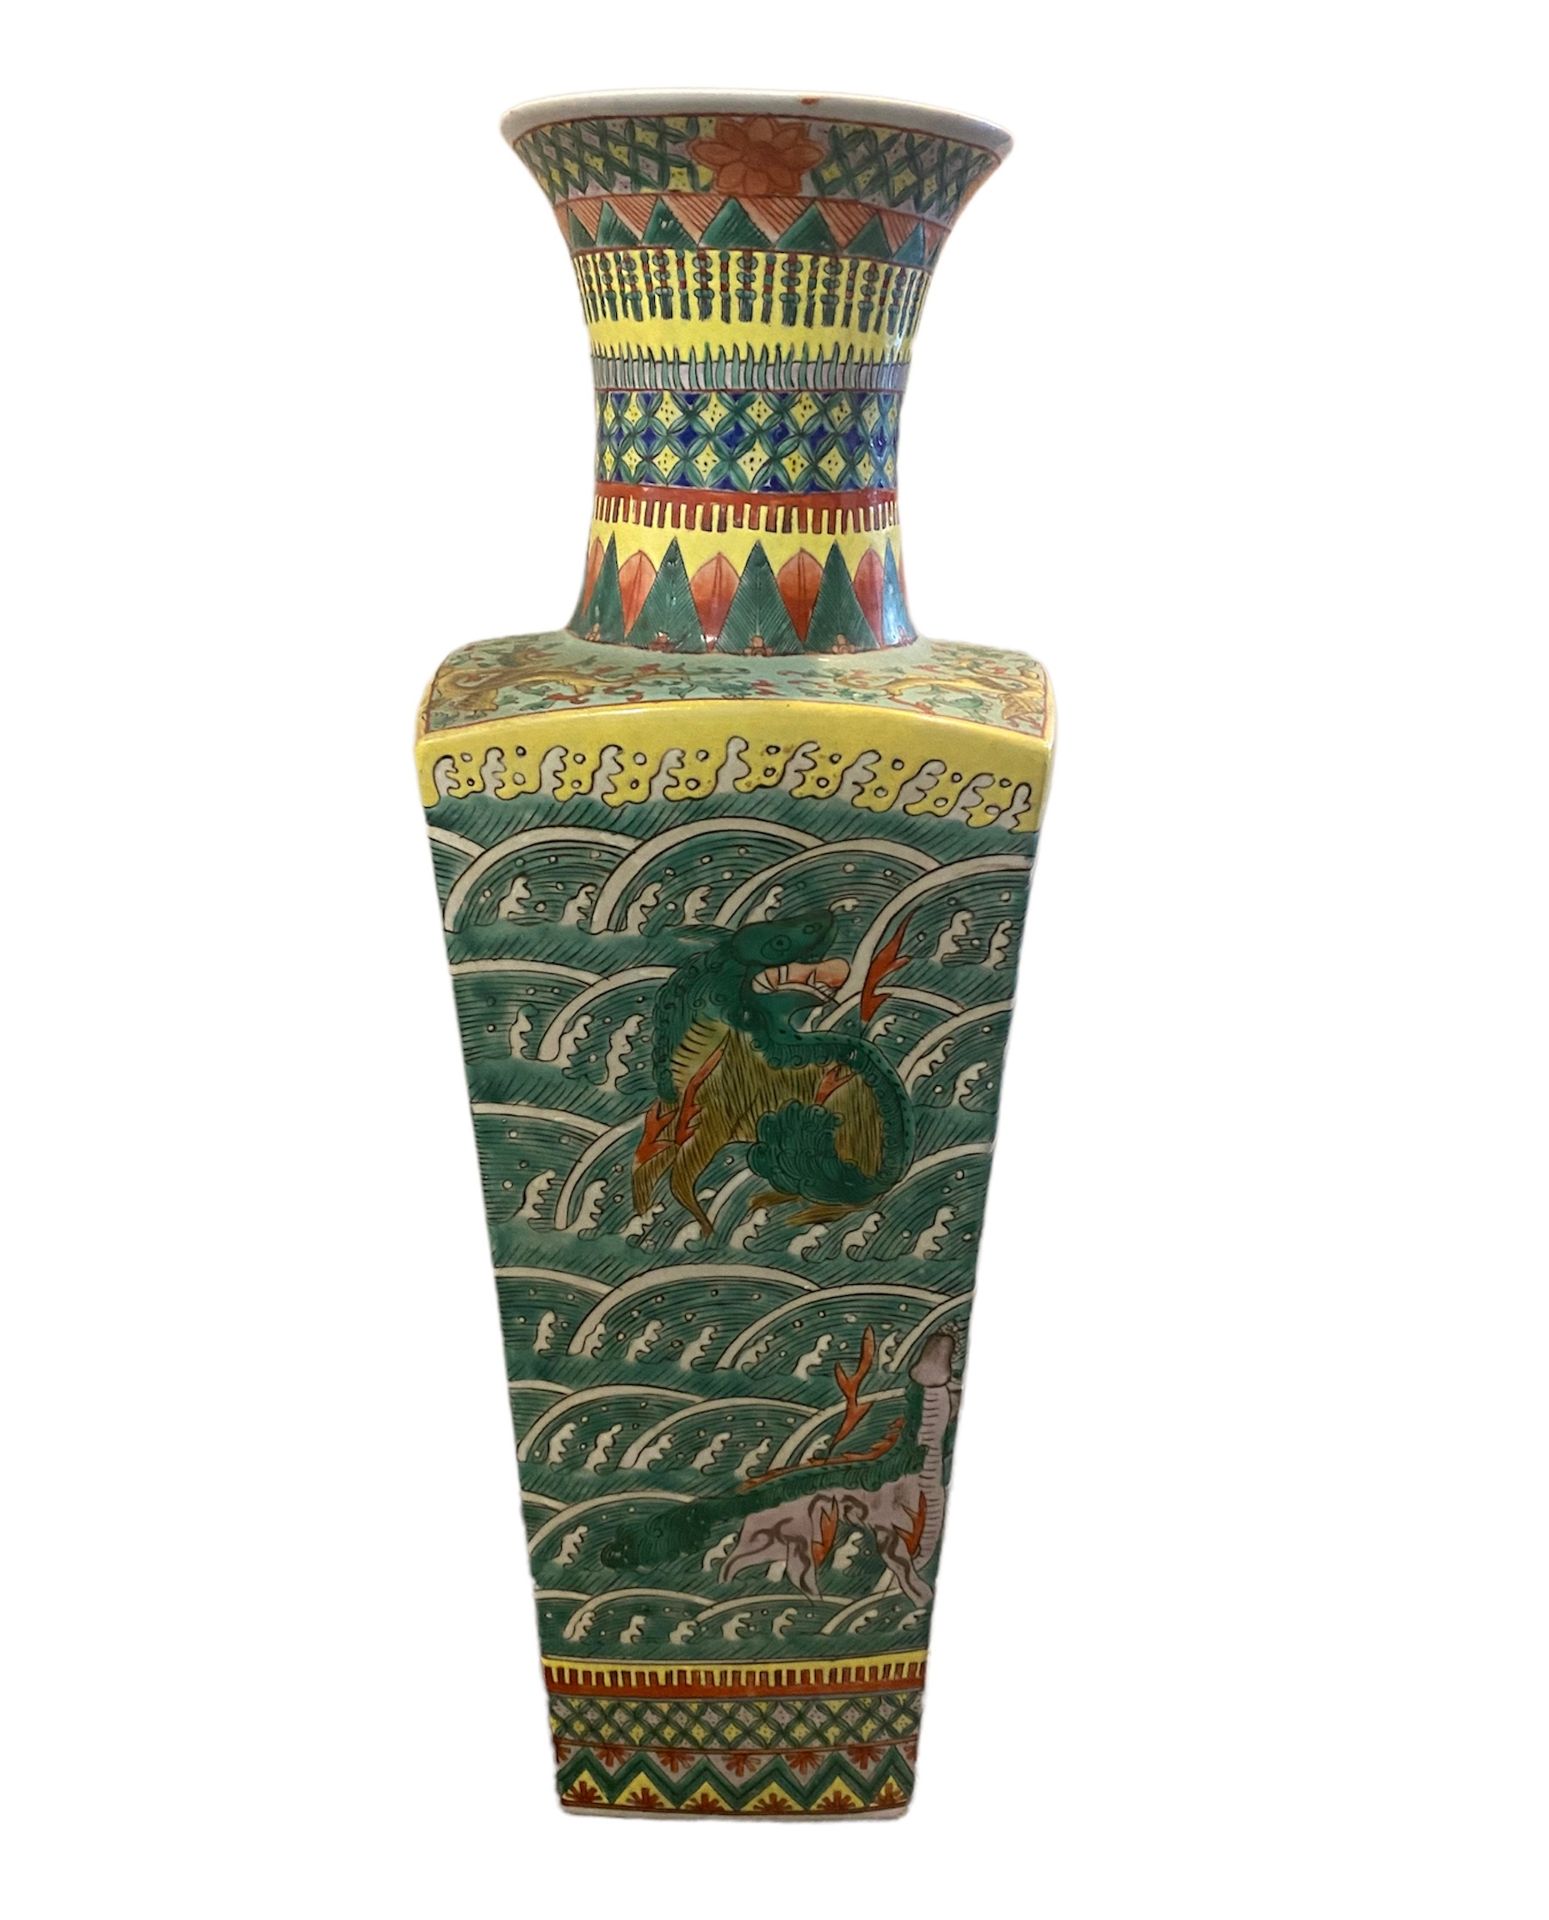 Null 绿色家族风格的大方瓷瓶，装饰着从海里出来的海兽。

中国，20世纪

H.58厘米